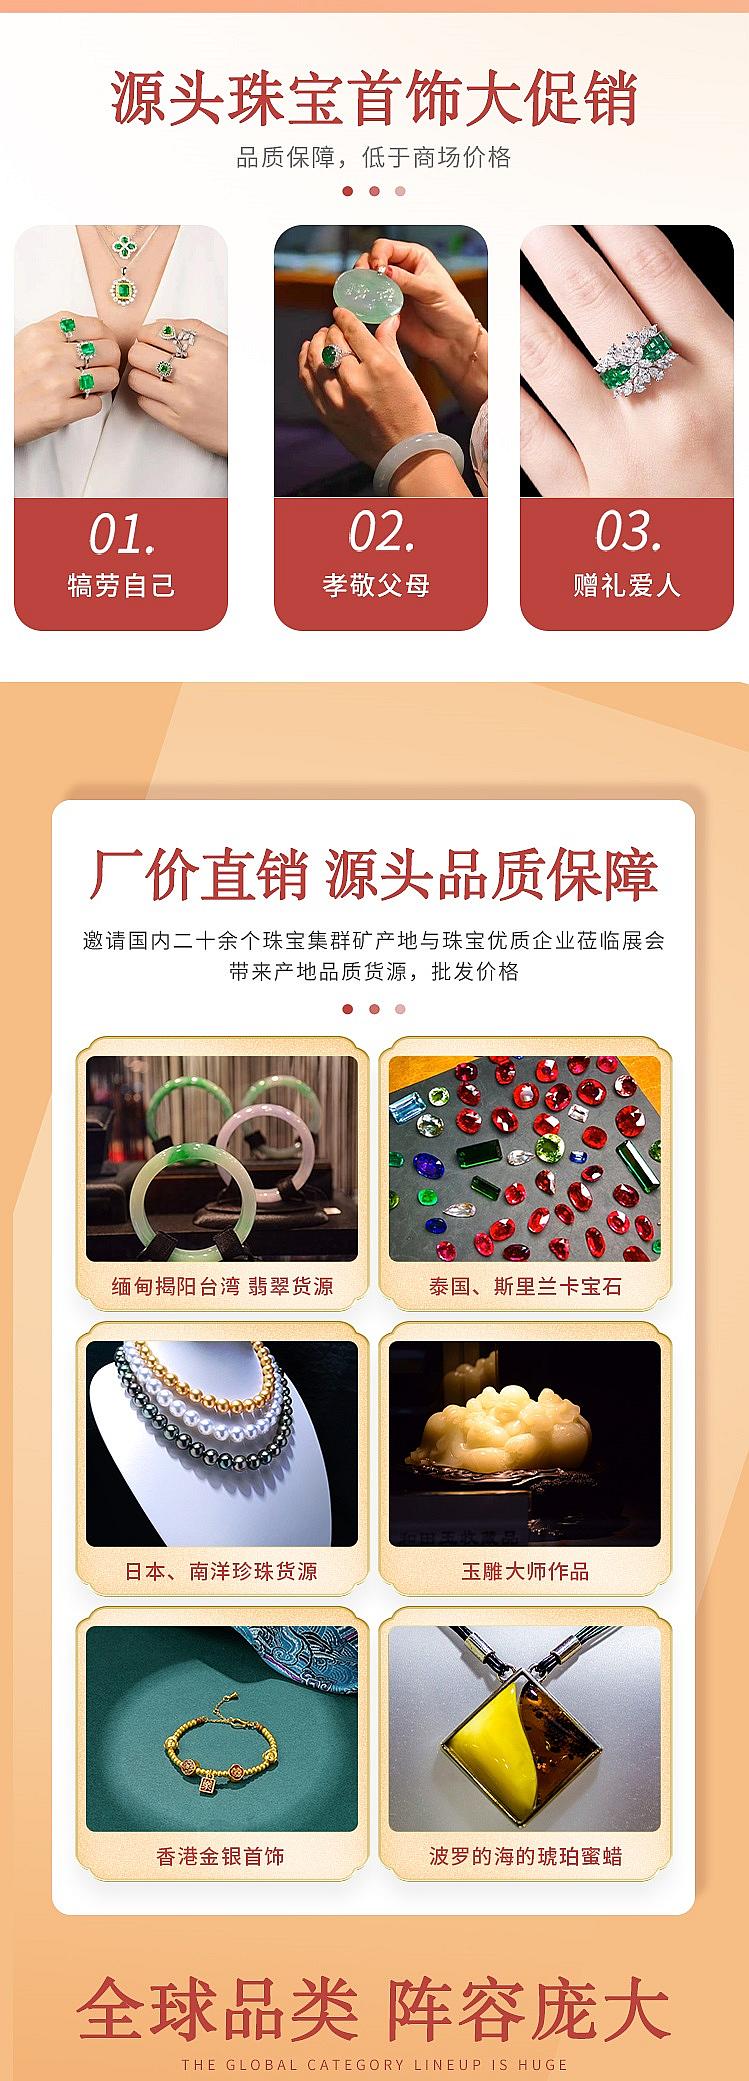 2018杭州珠宝展时间表(2020杭州国际珠宝展会时间)